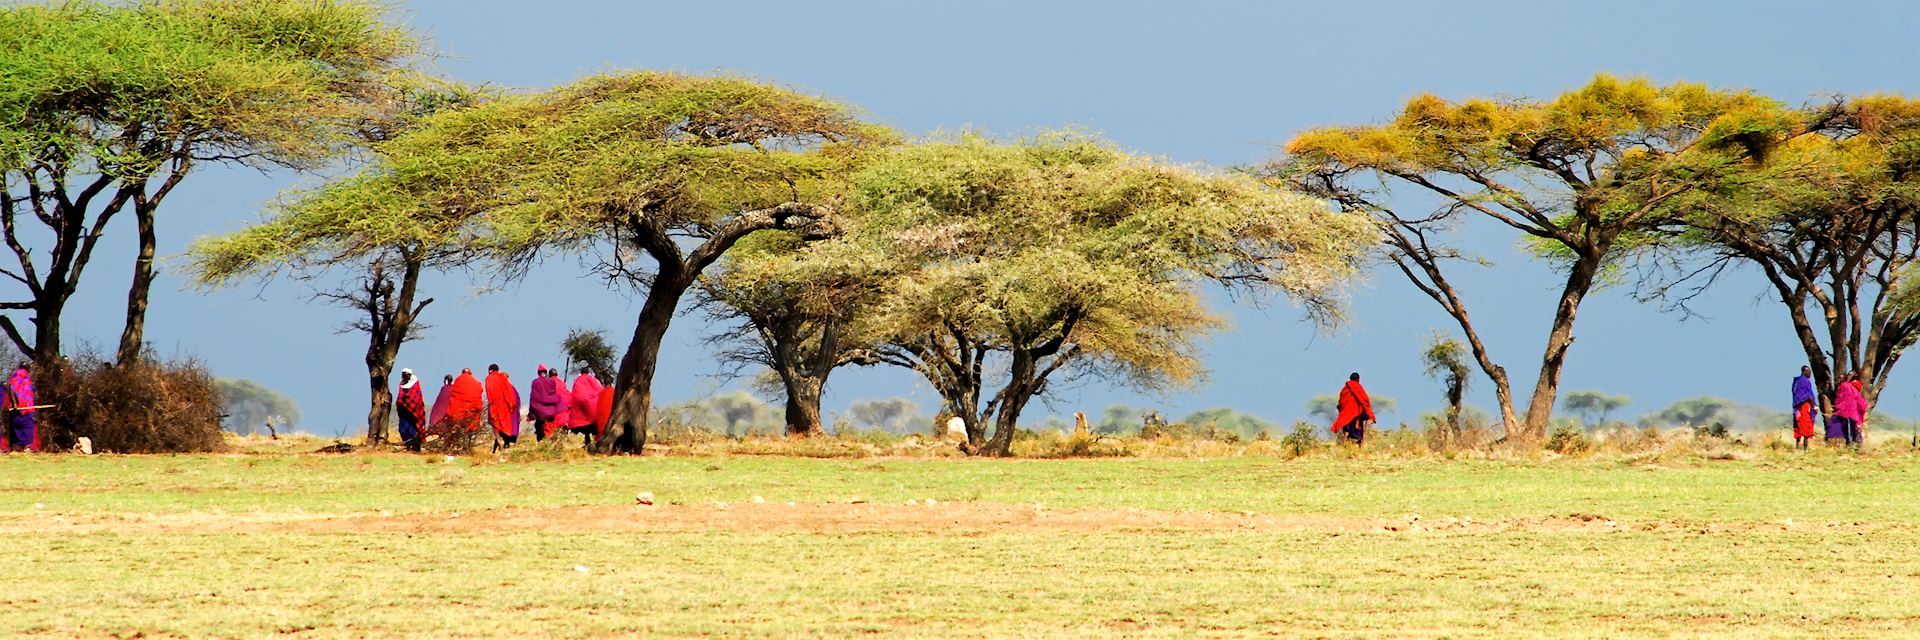 Massai in Tanzania